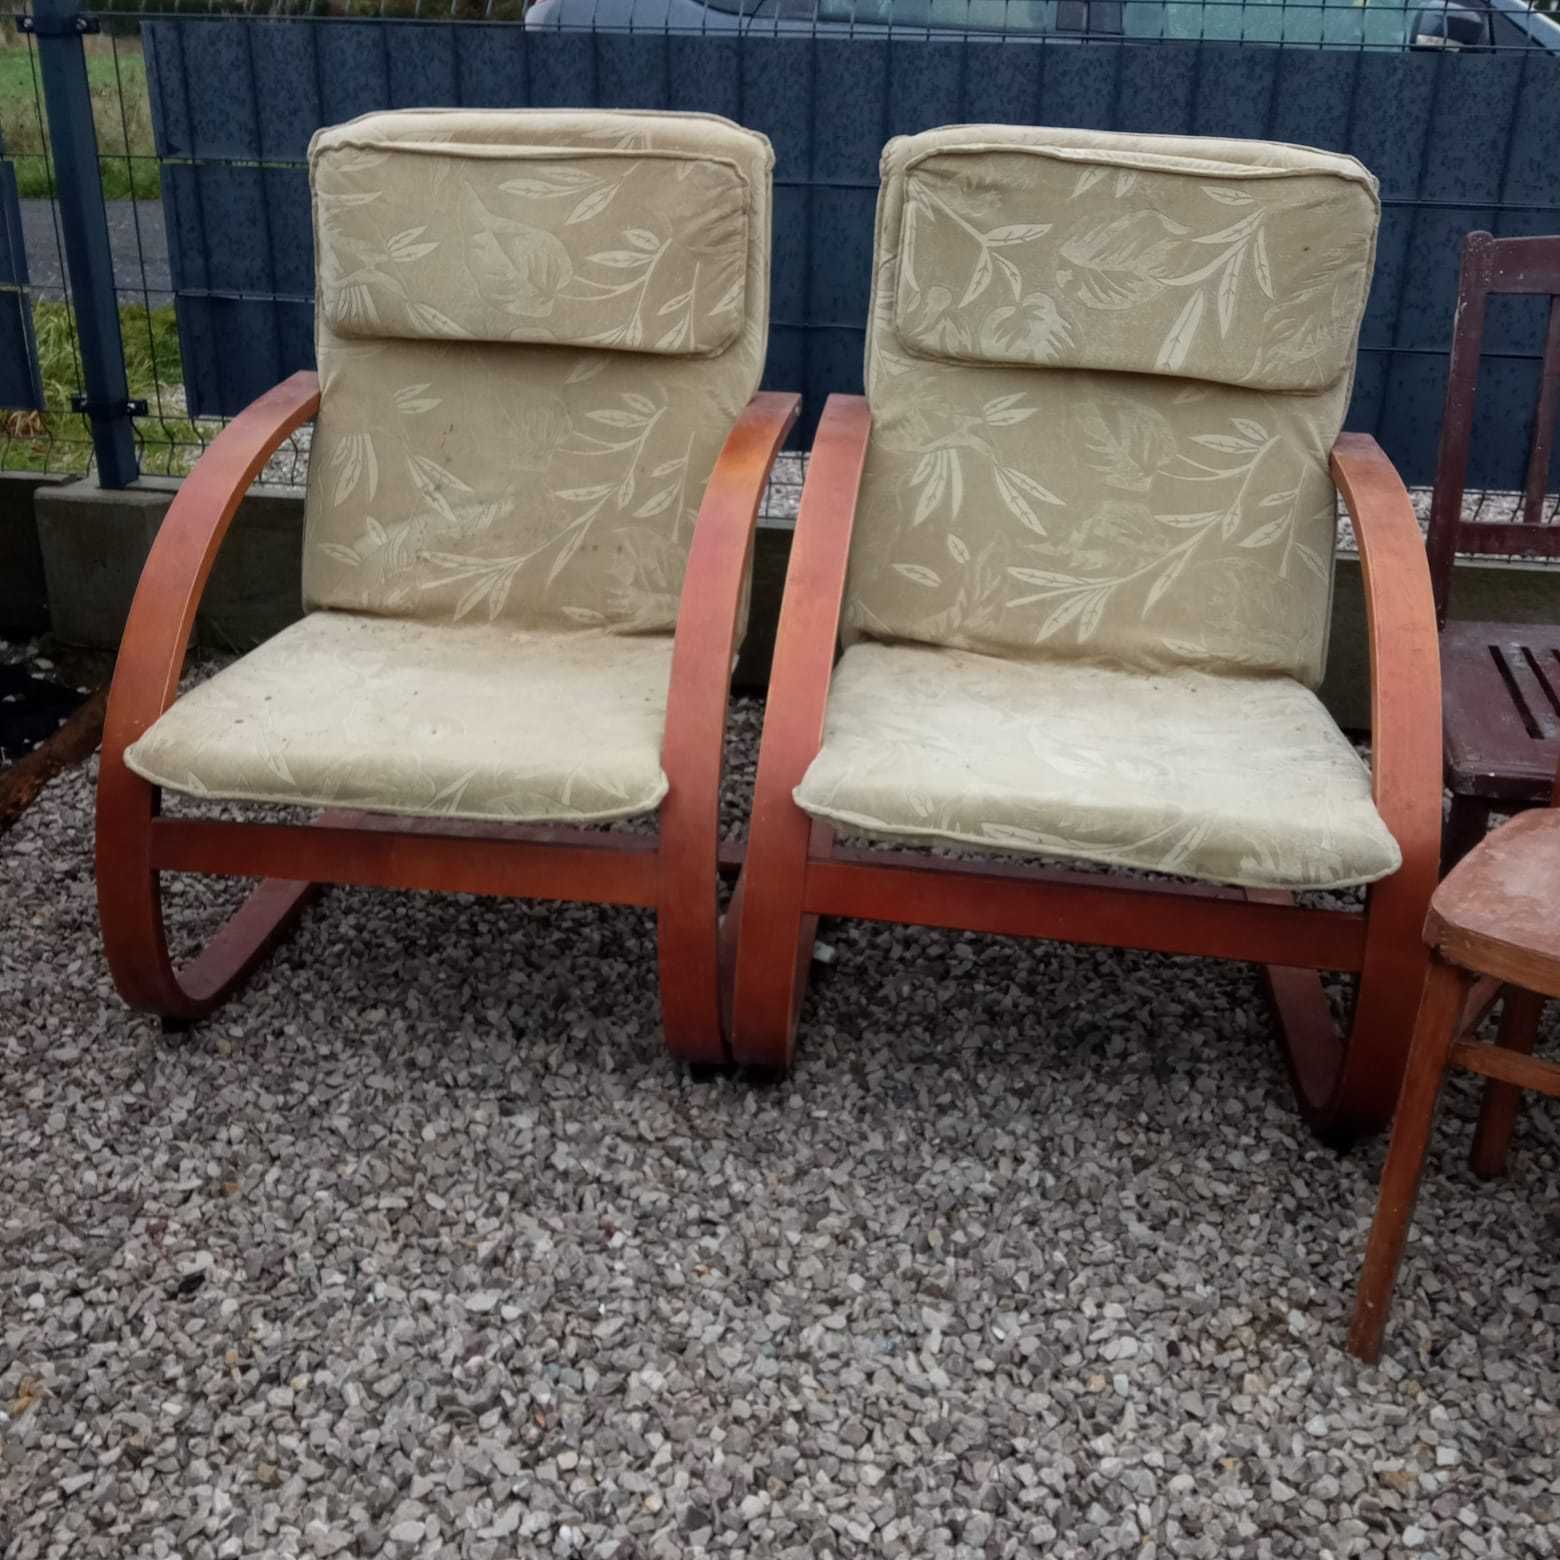 Używane fotele i krzesła do odnowienia